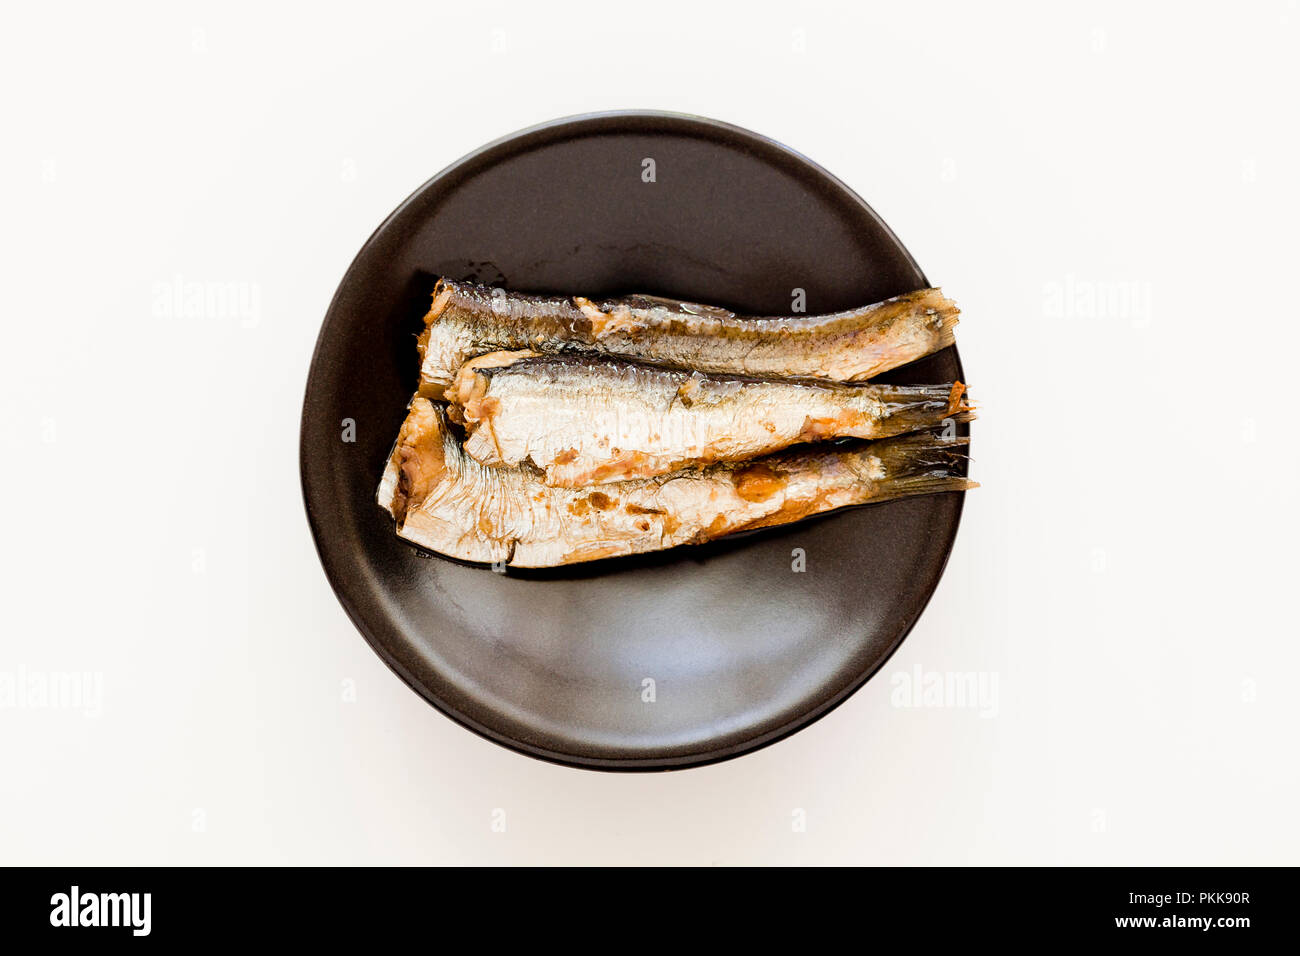 Les sardines (aka pilchards) mariné à l'huile d'olive sur plat - USA Banque D'Images